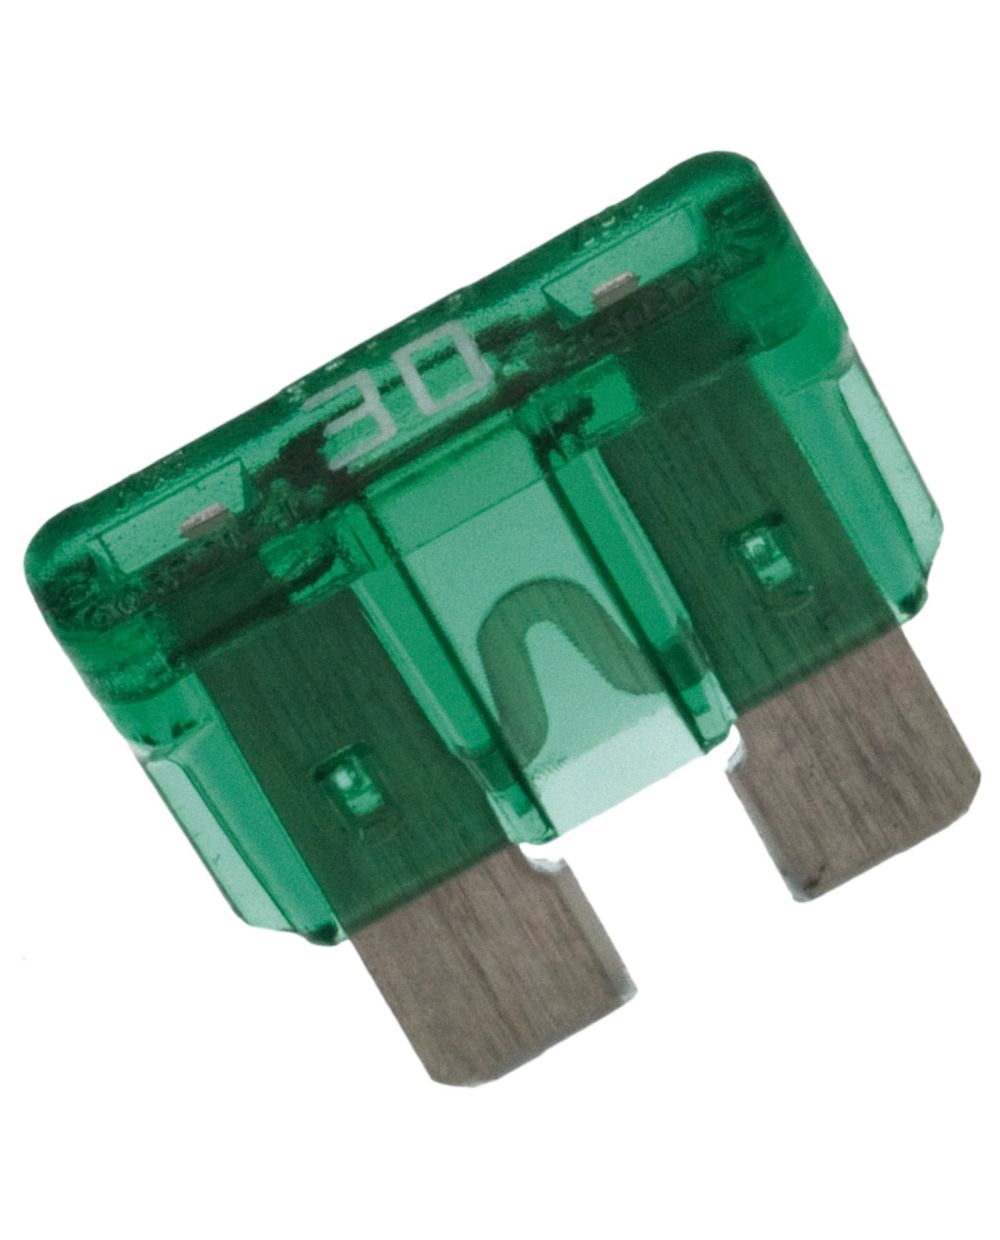 Porte fusible (mini fusible) (3mm³/140mm, cable de raccord des 2 cotés,  étanche), sans fusible